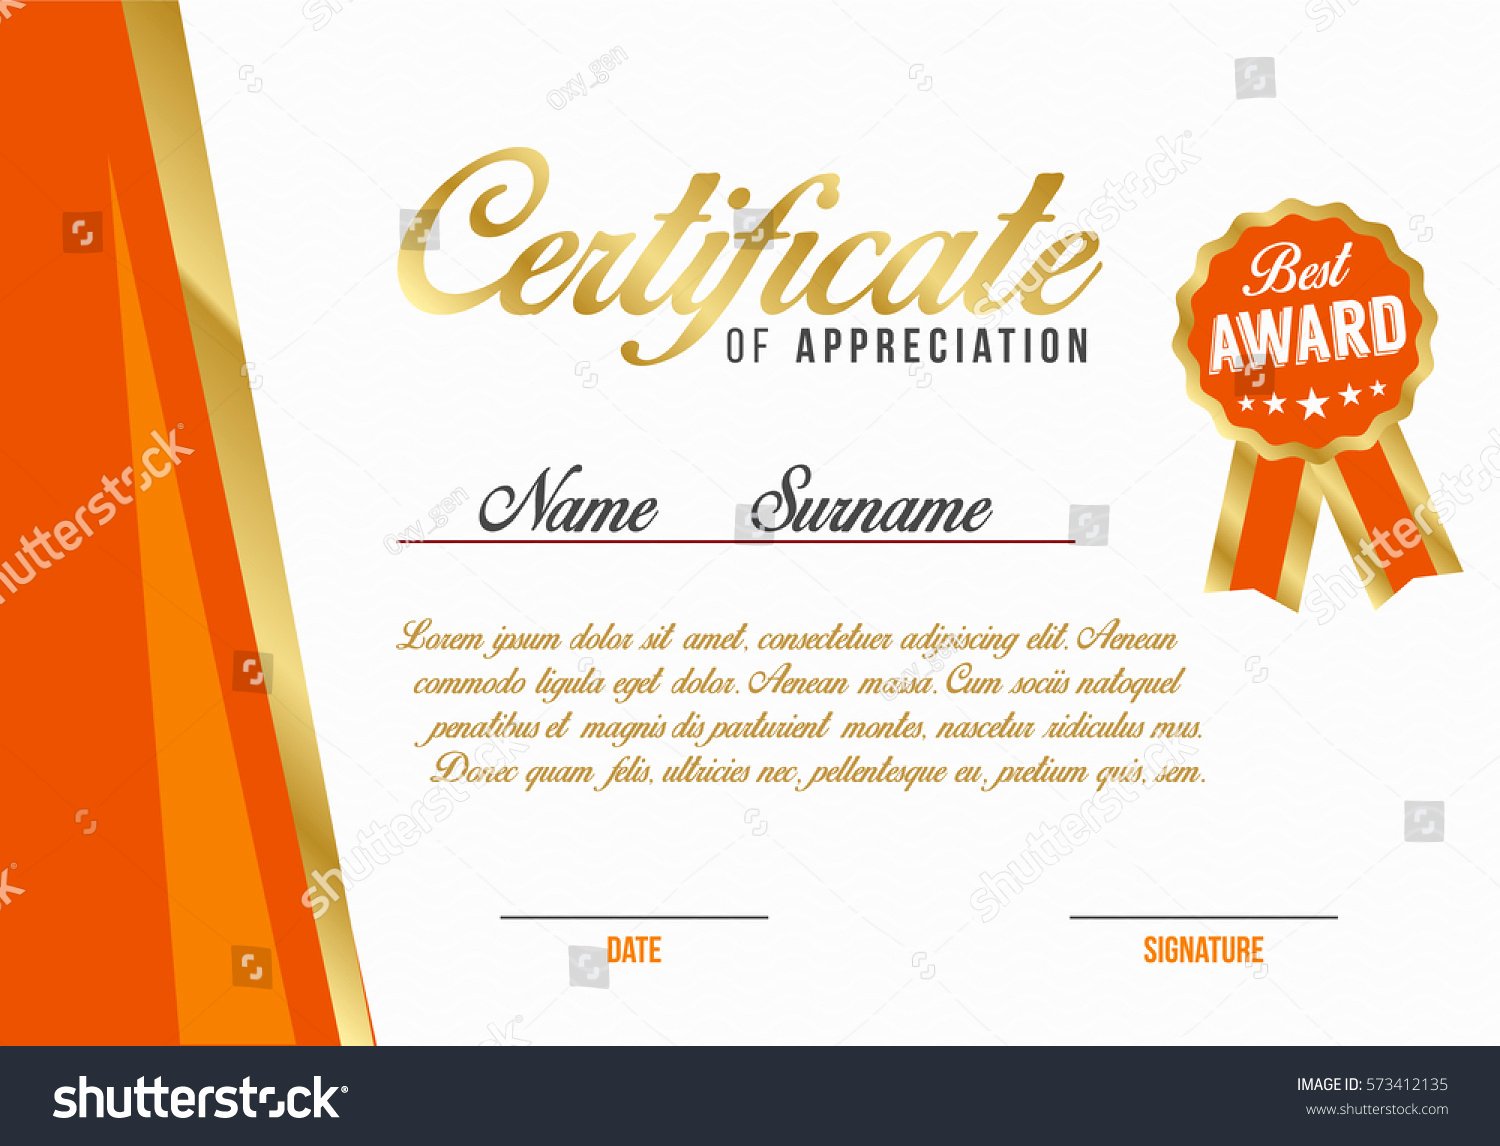 Graduation Certificate Of Appreciation Luxury Diploma Certificate Appreciation Template Background